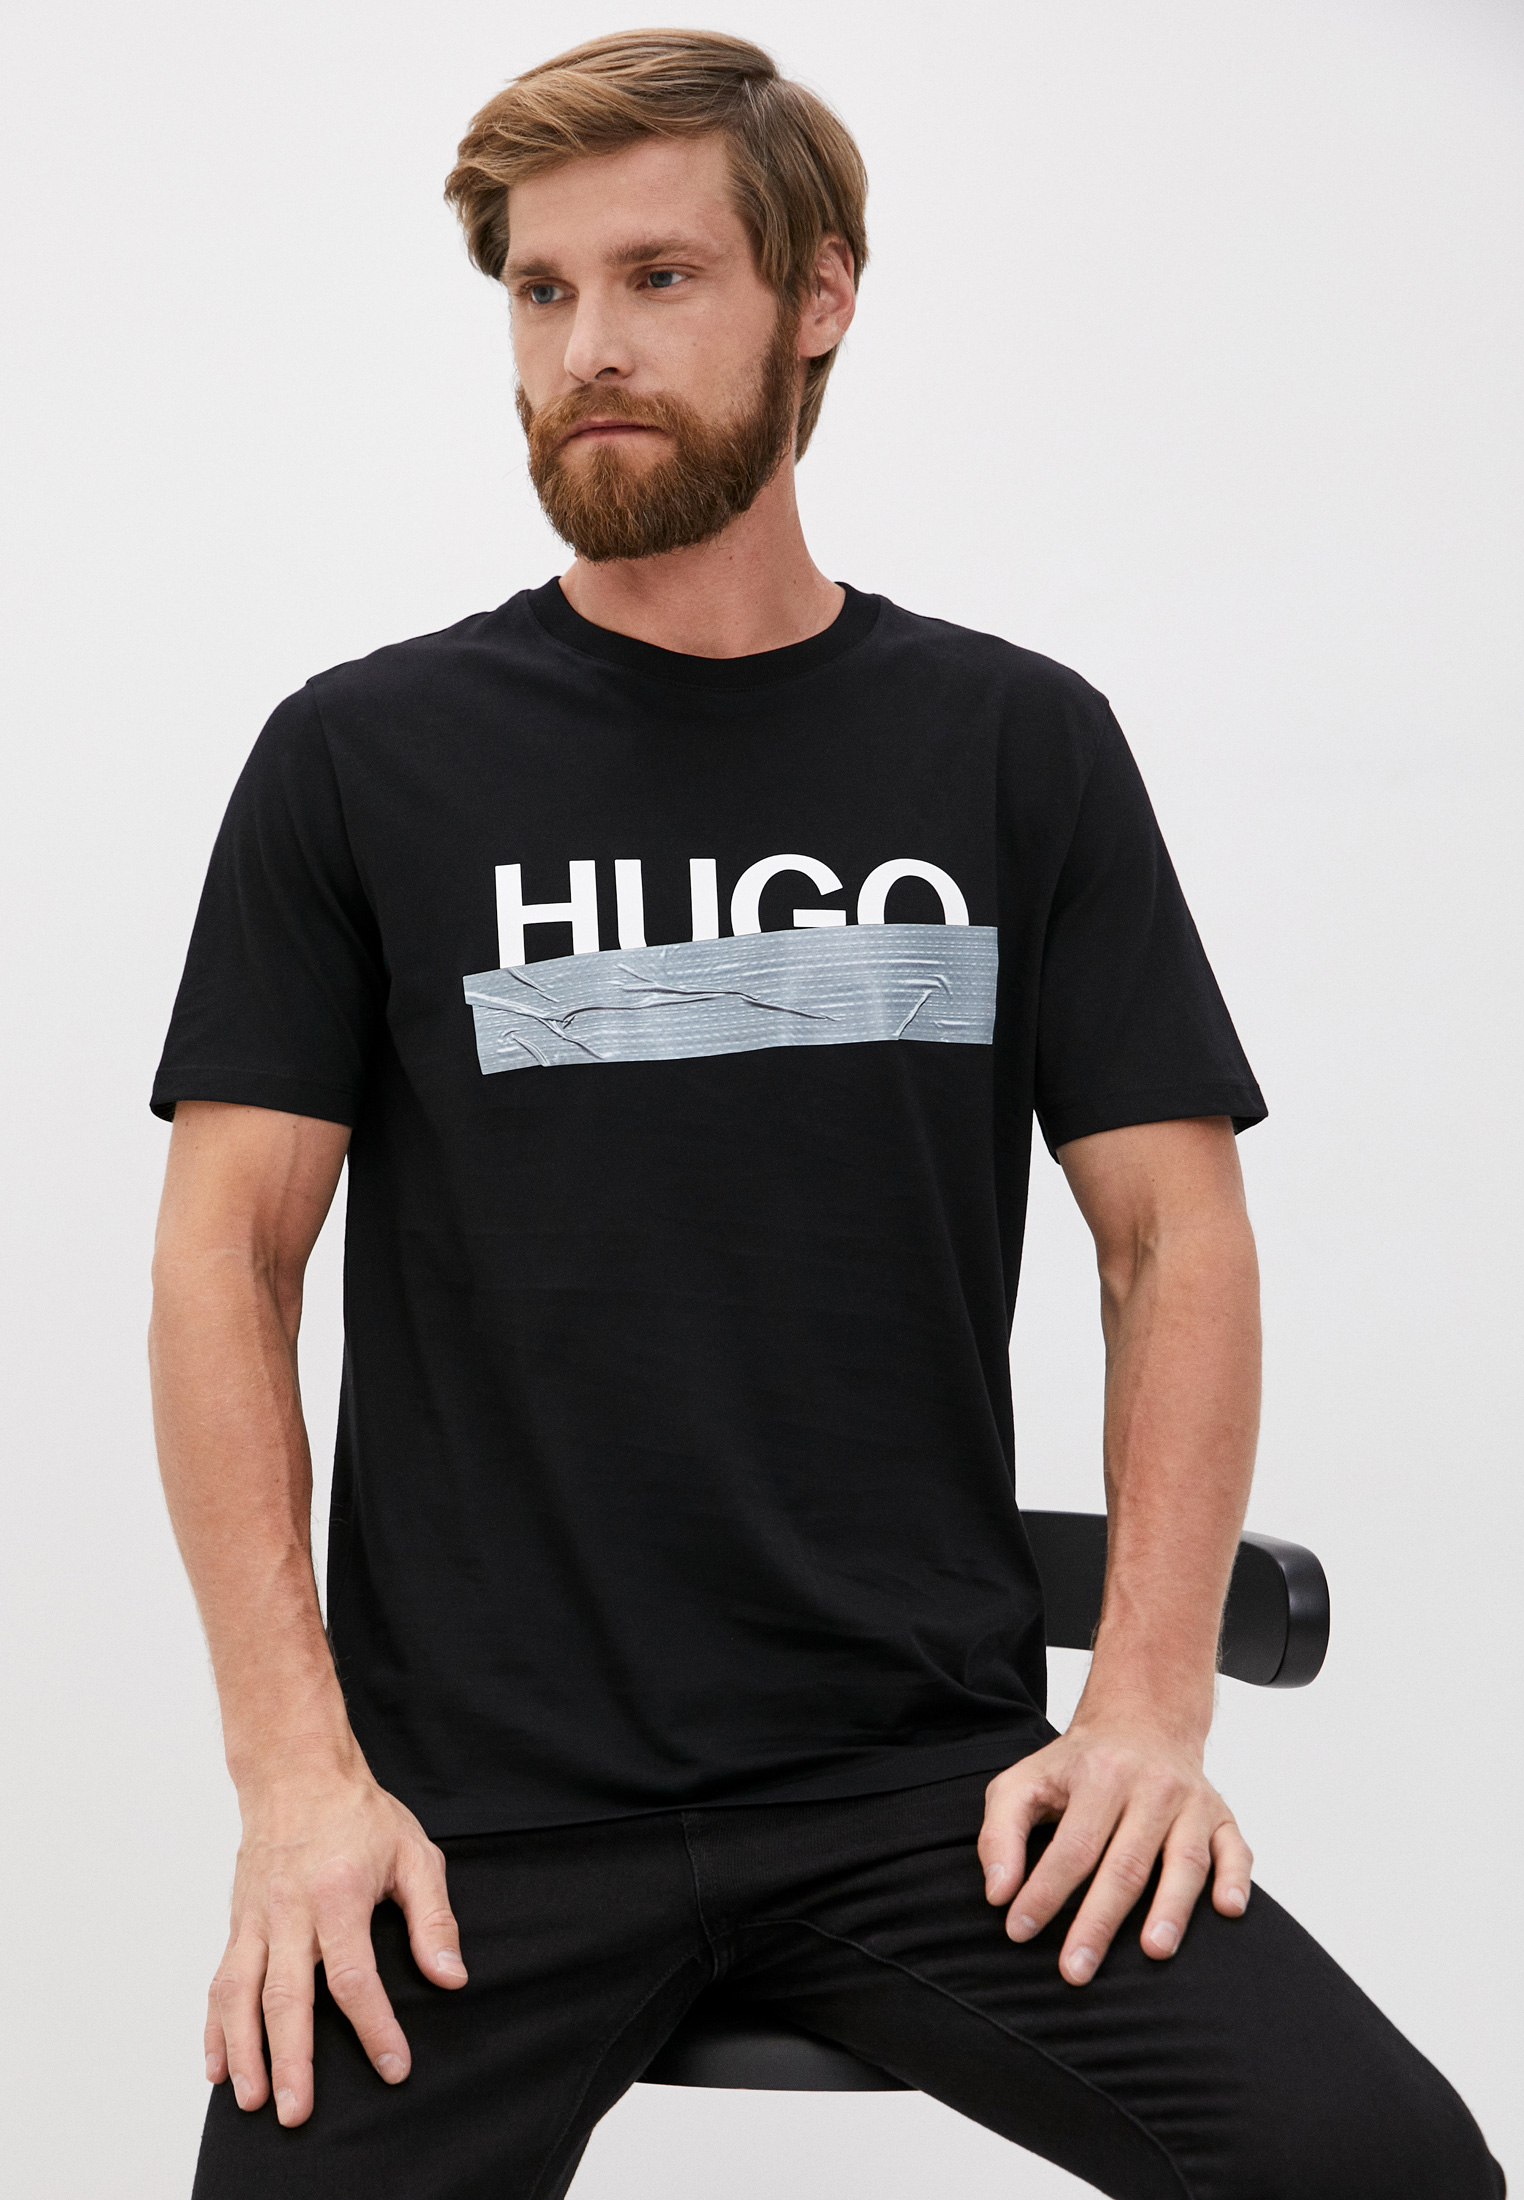 Hugo black. Футболка Hugo. Футболка Hugo мужская черная. Hugo футболка с принтом. Майка Hugo мужская черная.